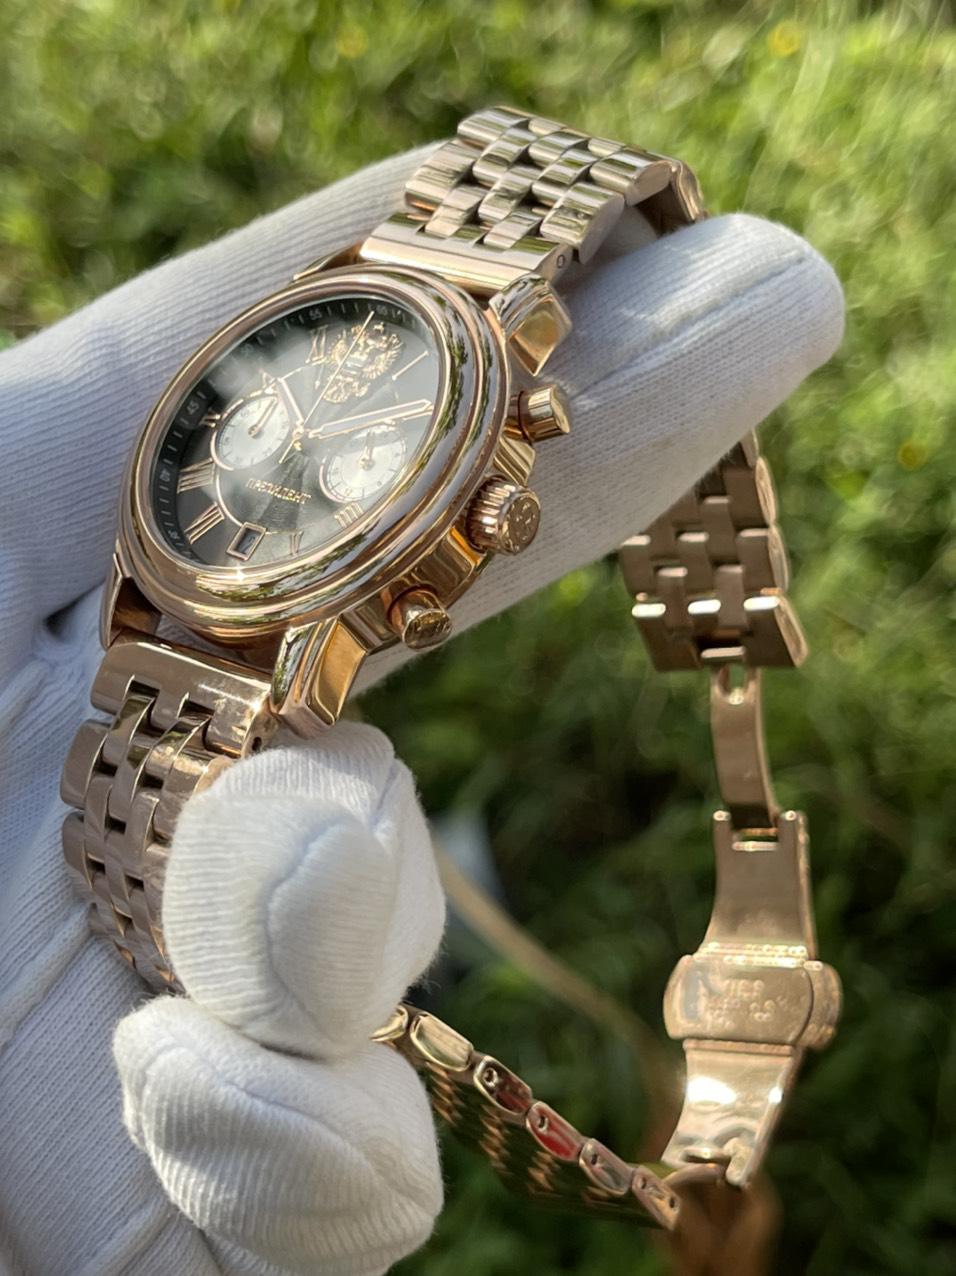 Đồng hồ Nga Putin - Sự kết hợp hoàn hảo giữa sự đẳng cấp và tinh thần Nga - 43329022 DKL Russian Watches